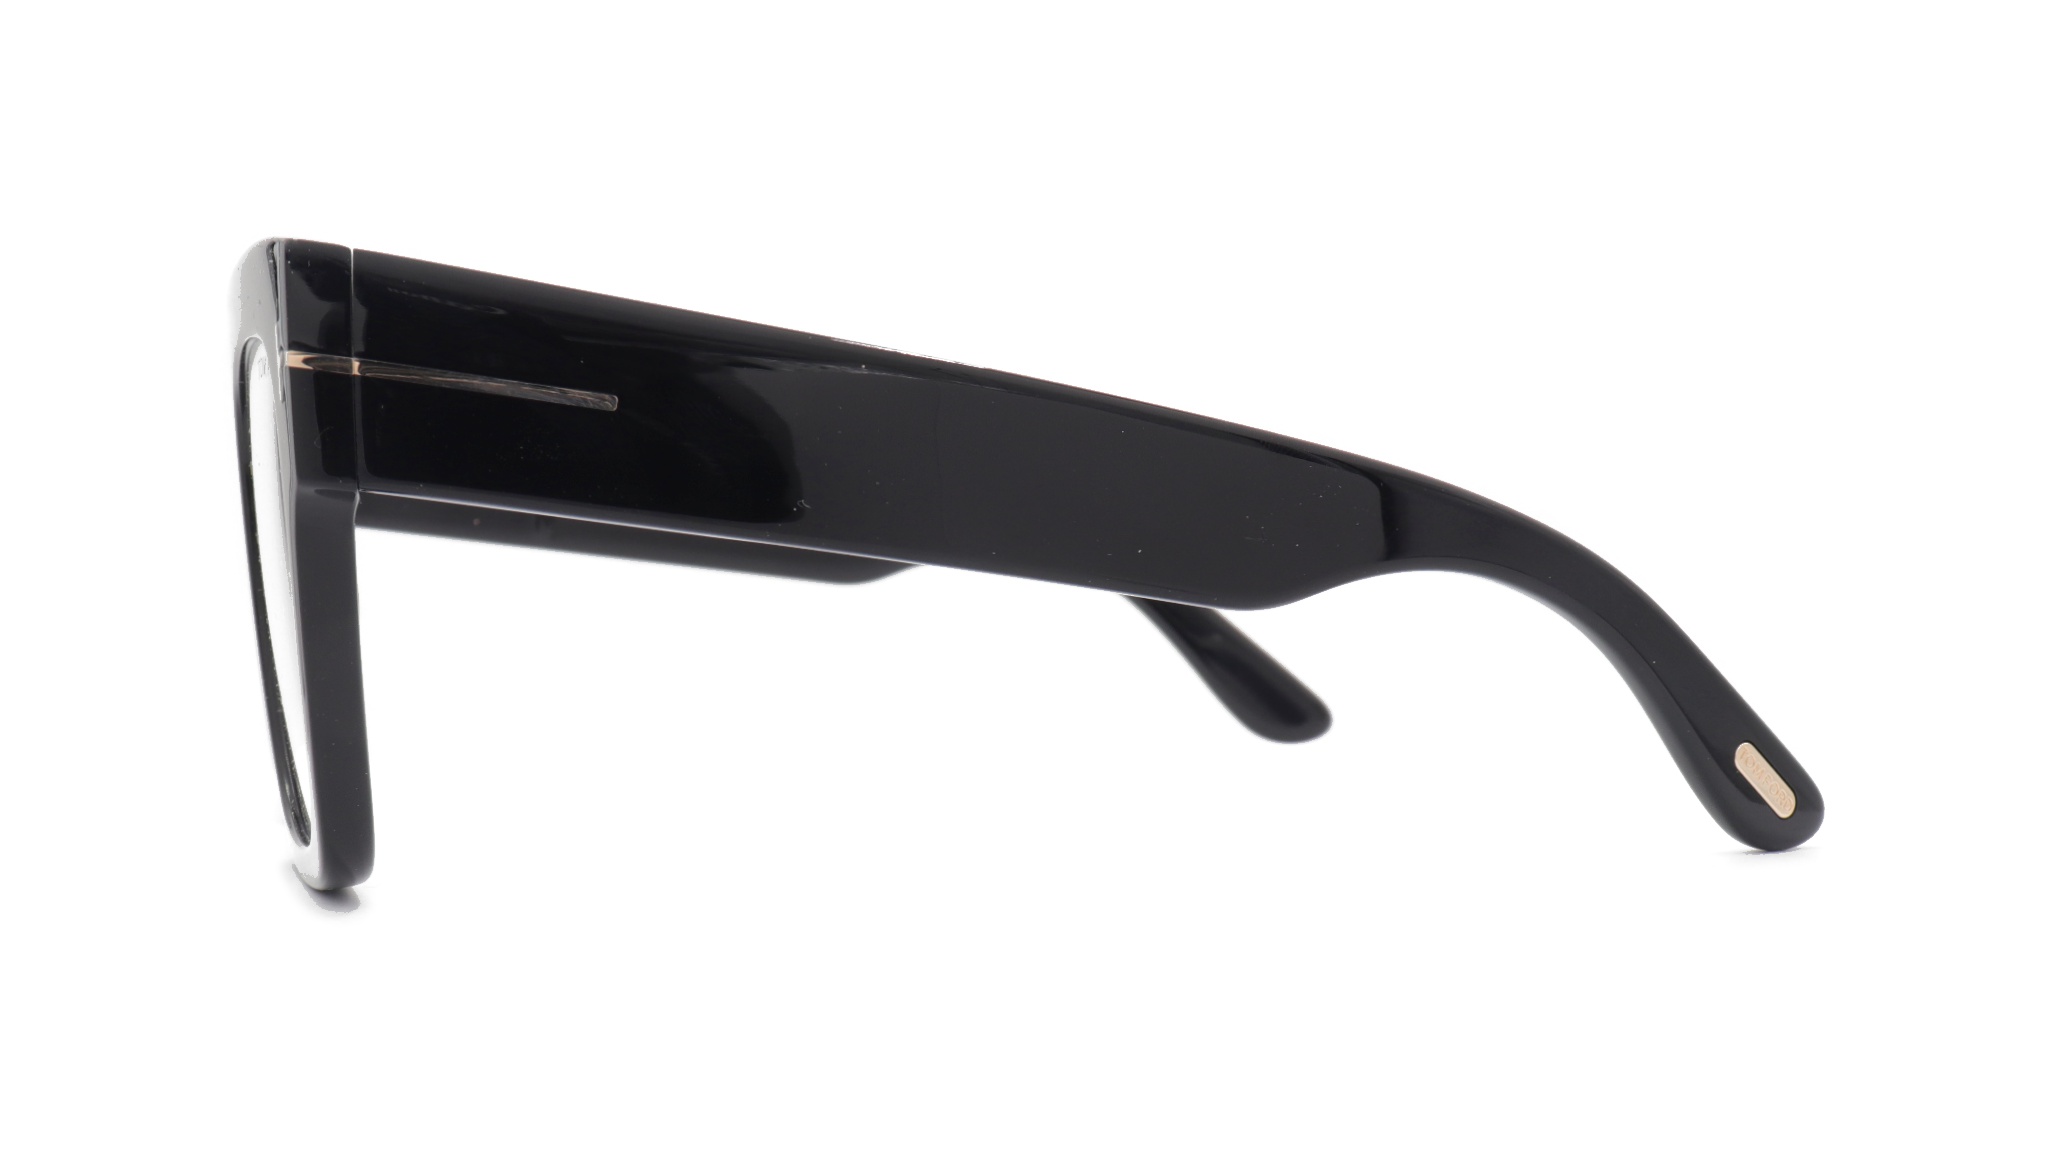 Paire de lunettes de vue Tom-ford Tf847 couleur noir - Côté droit - Doyle